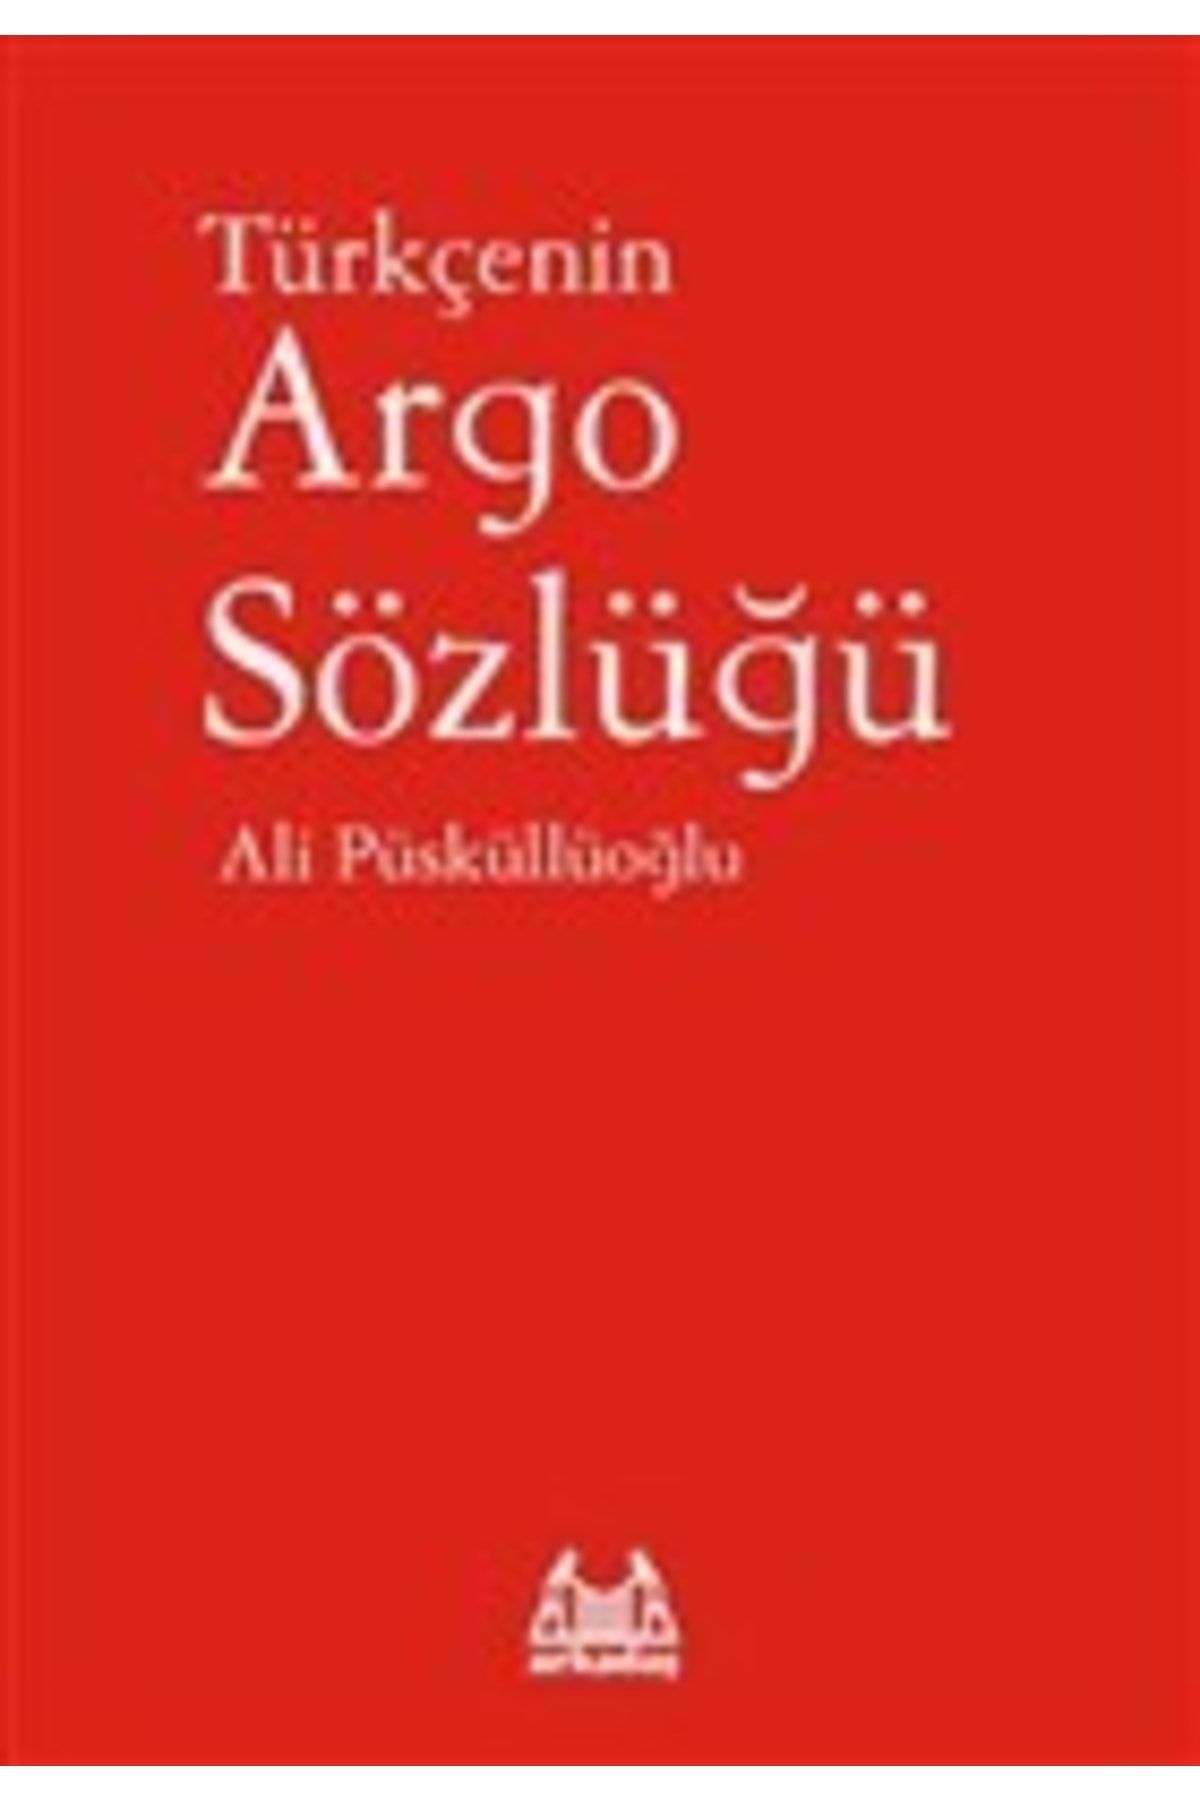 Arkadaş Yayıncılık Türkçenin Argo Sözlüğü